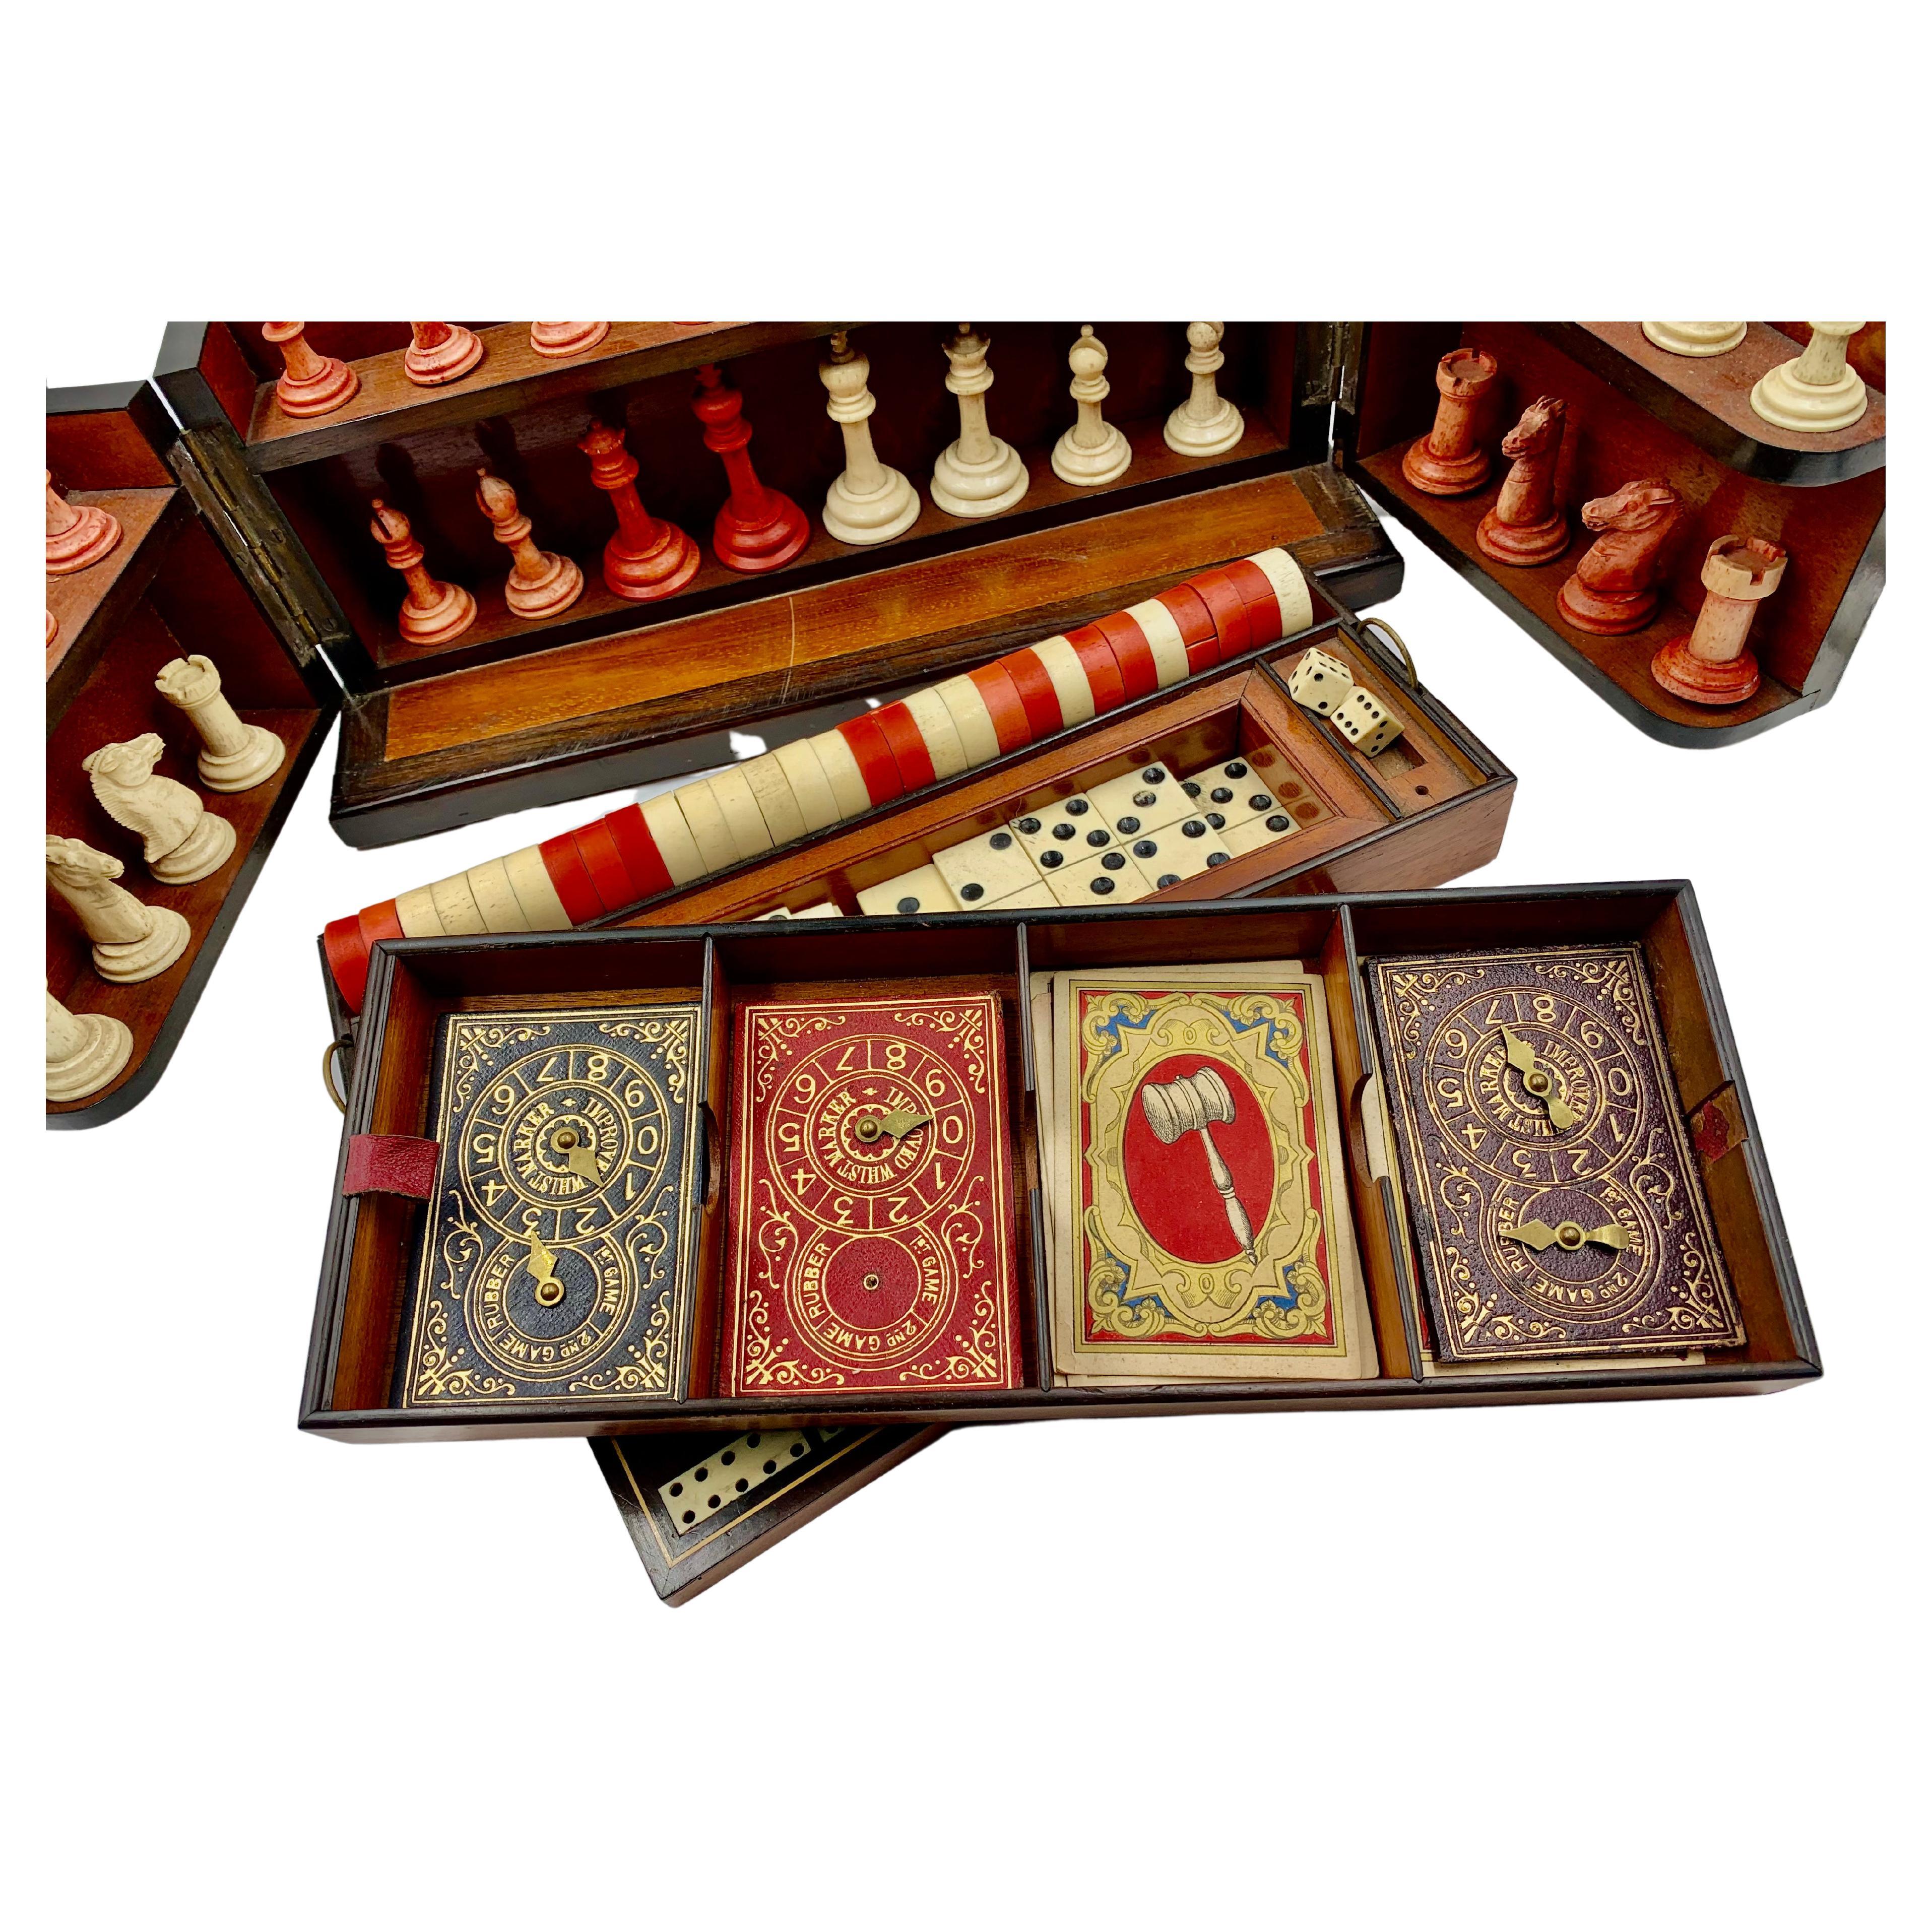 Boîte de jeu ancienne de Coromandel, échecs, backgammon, damiers, course de chevaux sculptés à la main